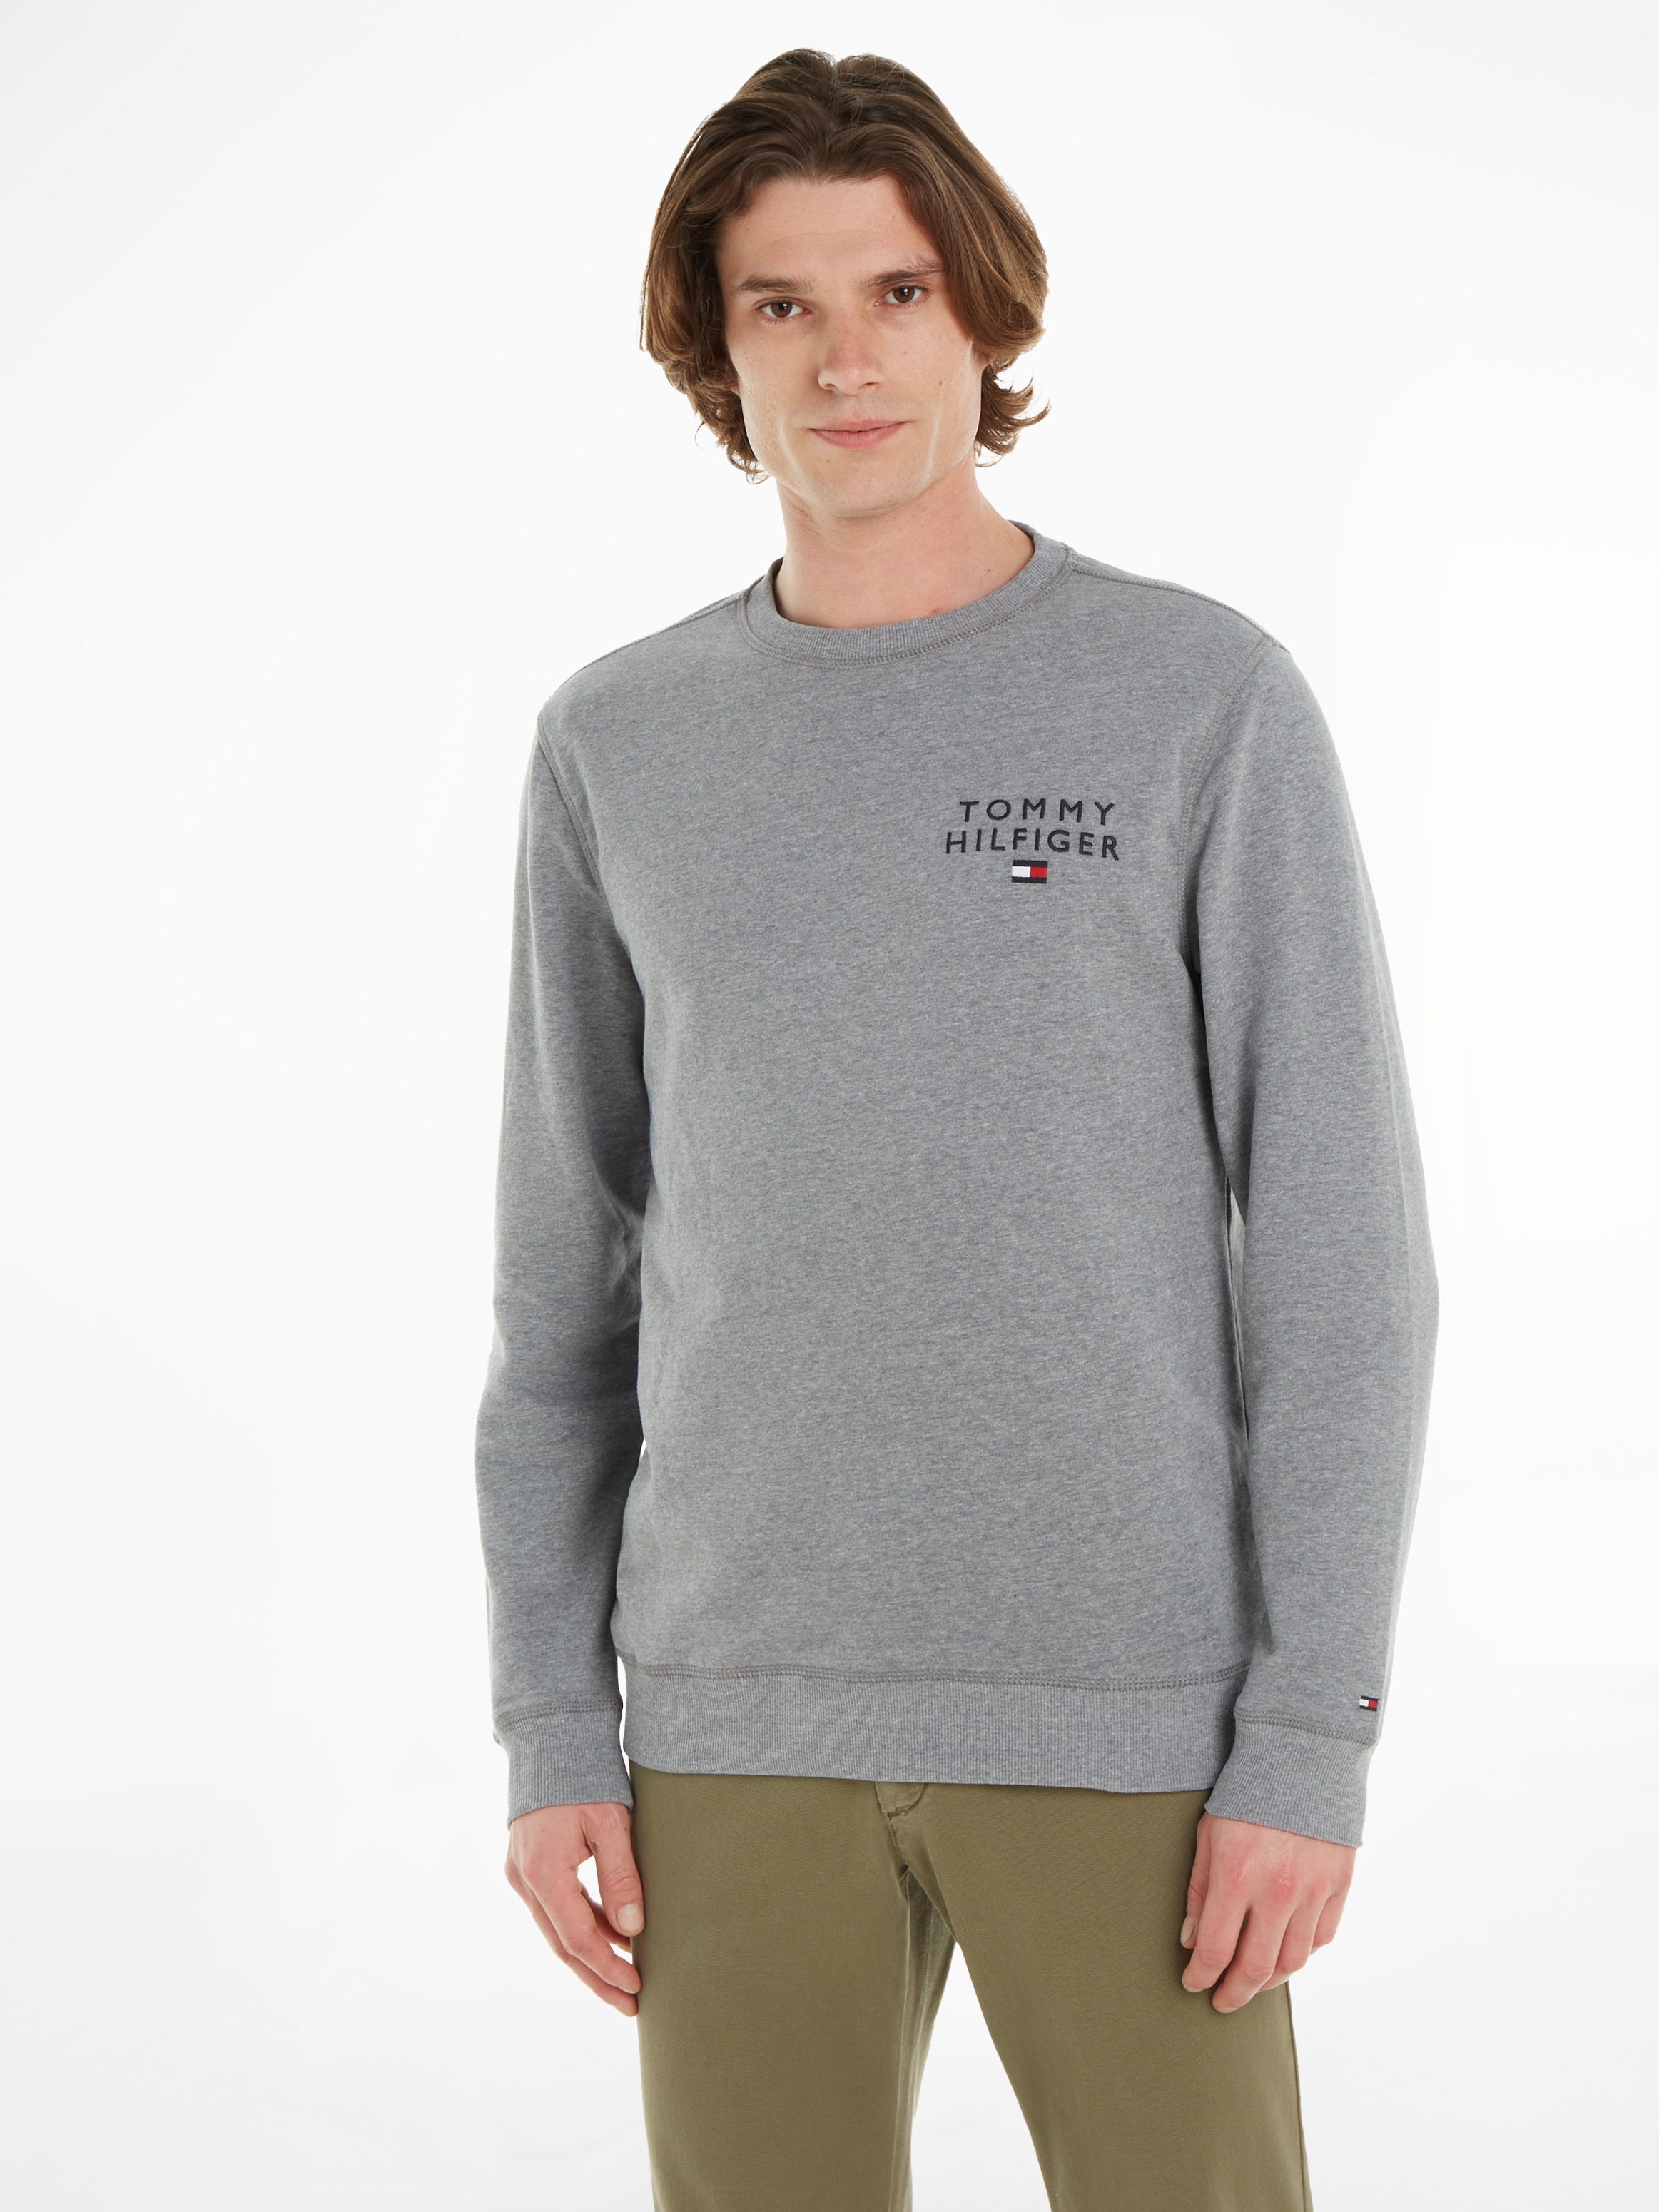 TOP Hilfiger Hilfiger bestellen mit Underwear Tommy Markenlabel Sweatshirt online HWK«, »TRACK Tommy